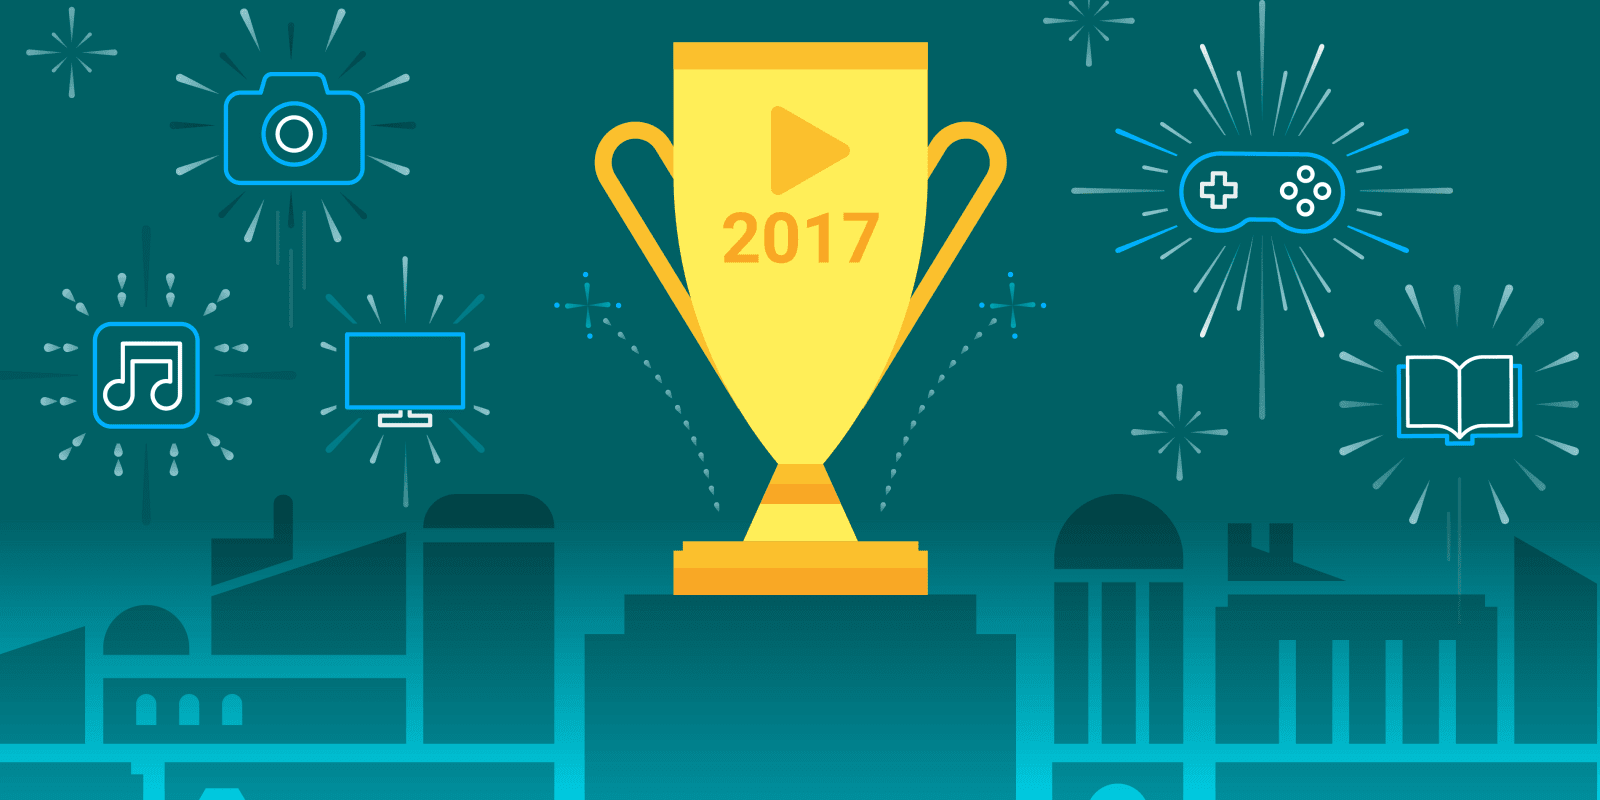 جوجل بلاي تعلن عن افضل الالعاب و التطبيقات لسنة 2017